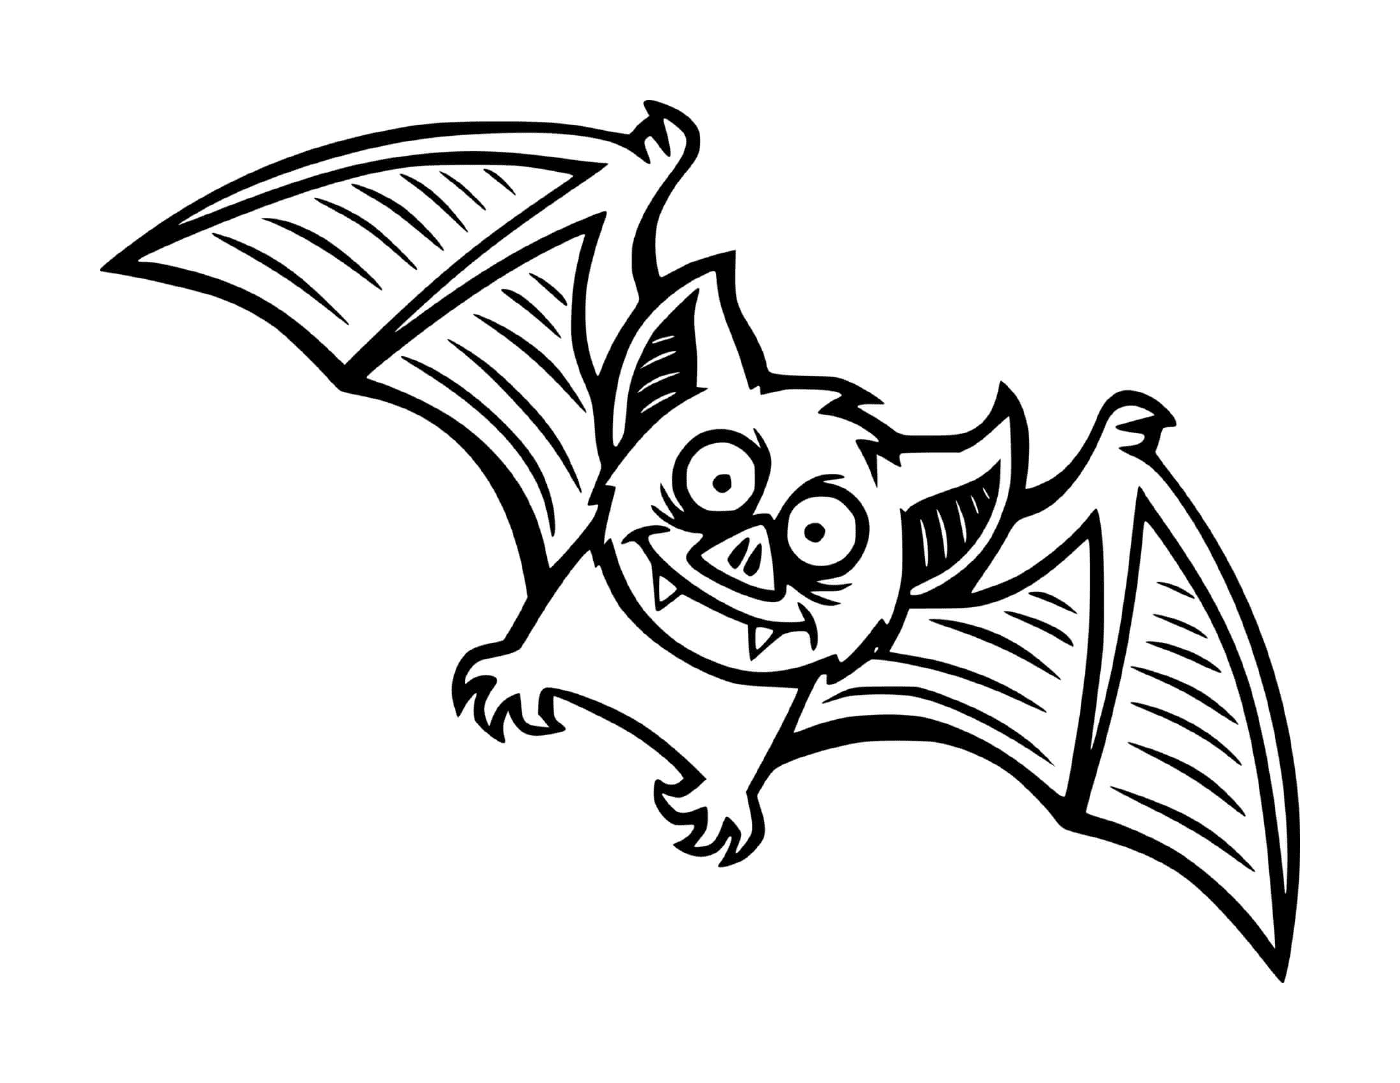  small bat in cartoon version in mid-flight 